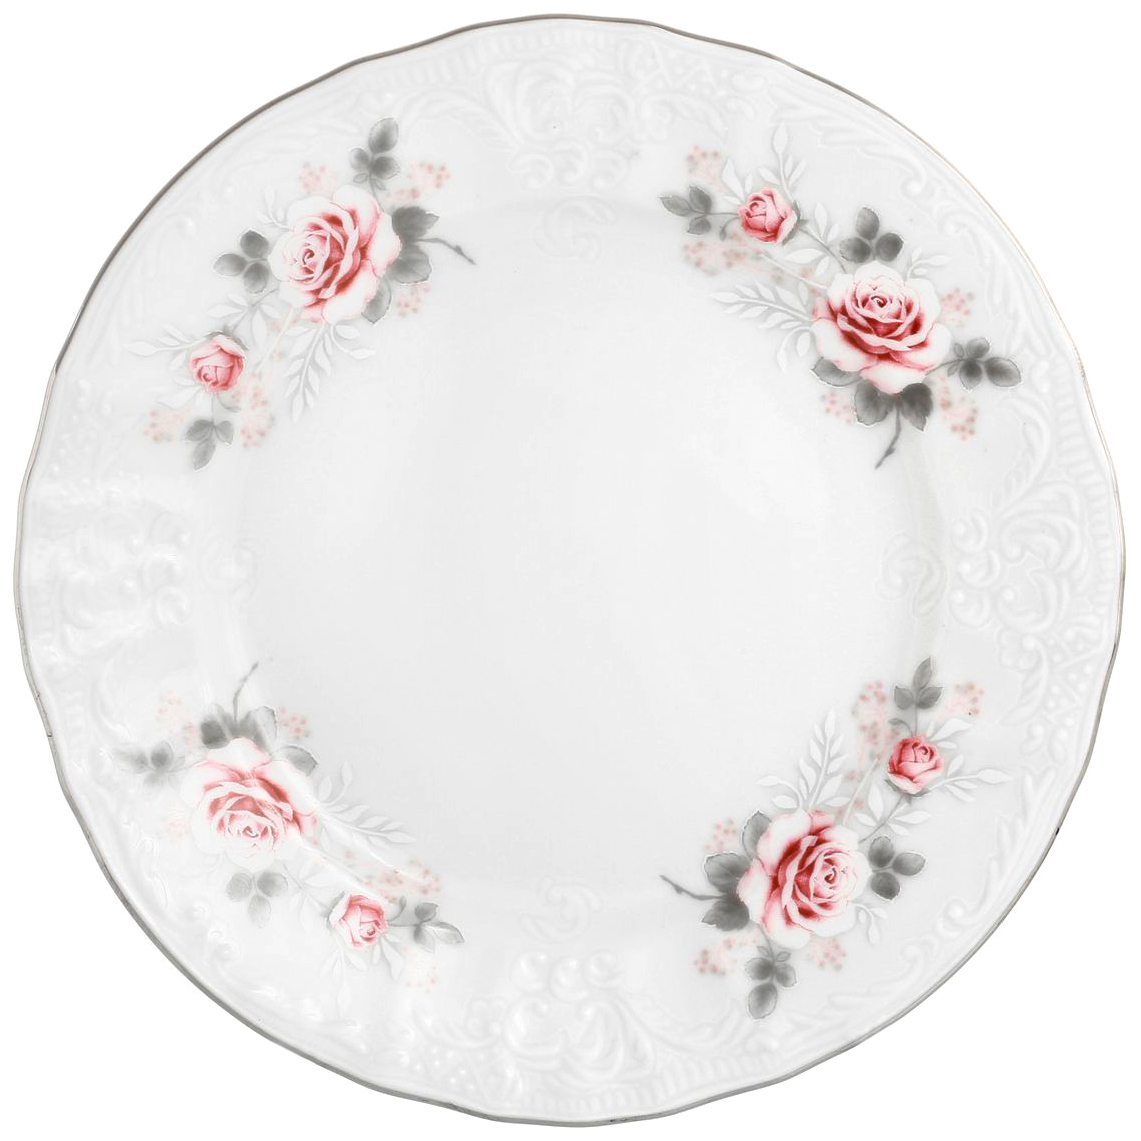 ваза bernadotte бледные розы 19 см Набор десертных тарелок Bernadotte Бледные розы 17 см 6 шт